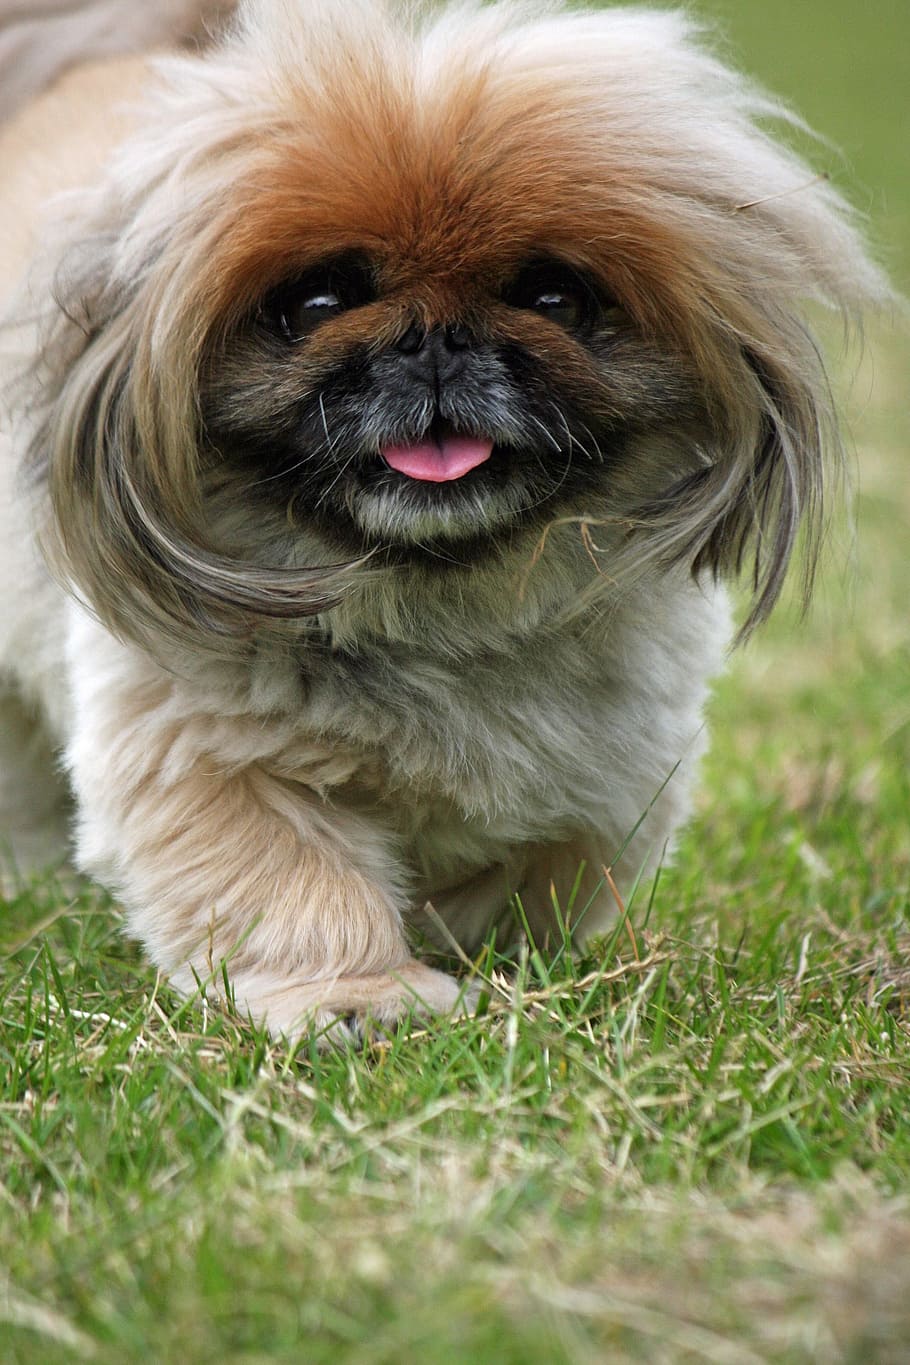 pekingese, dog, cute, adorable, close-up, canine, pet, animal, walking, one animal